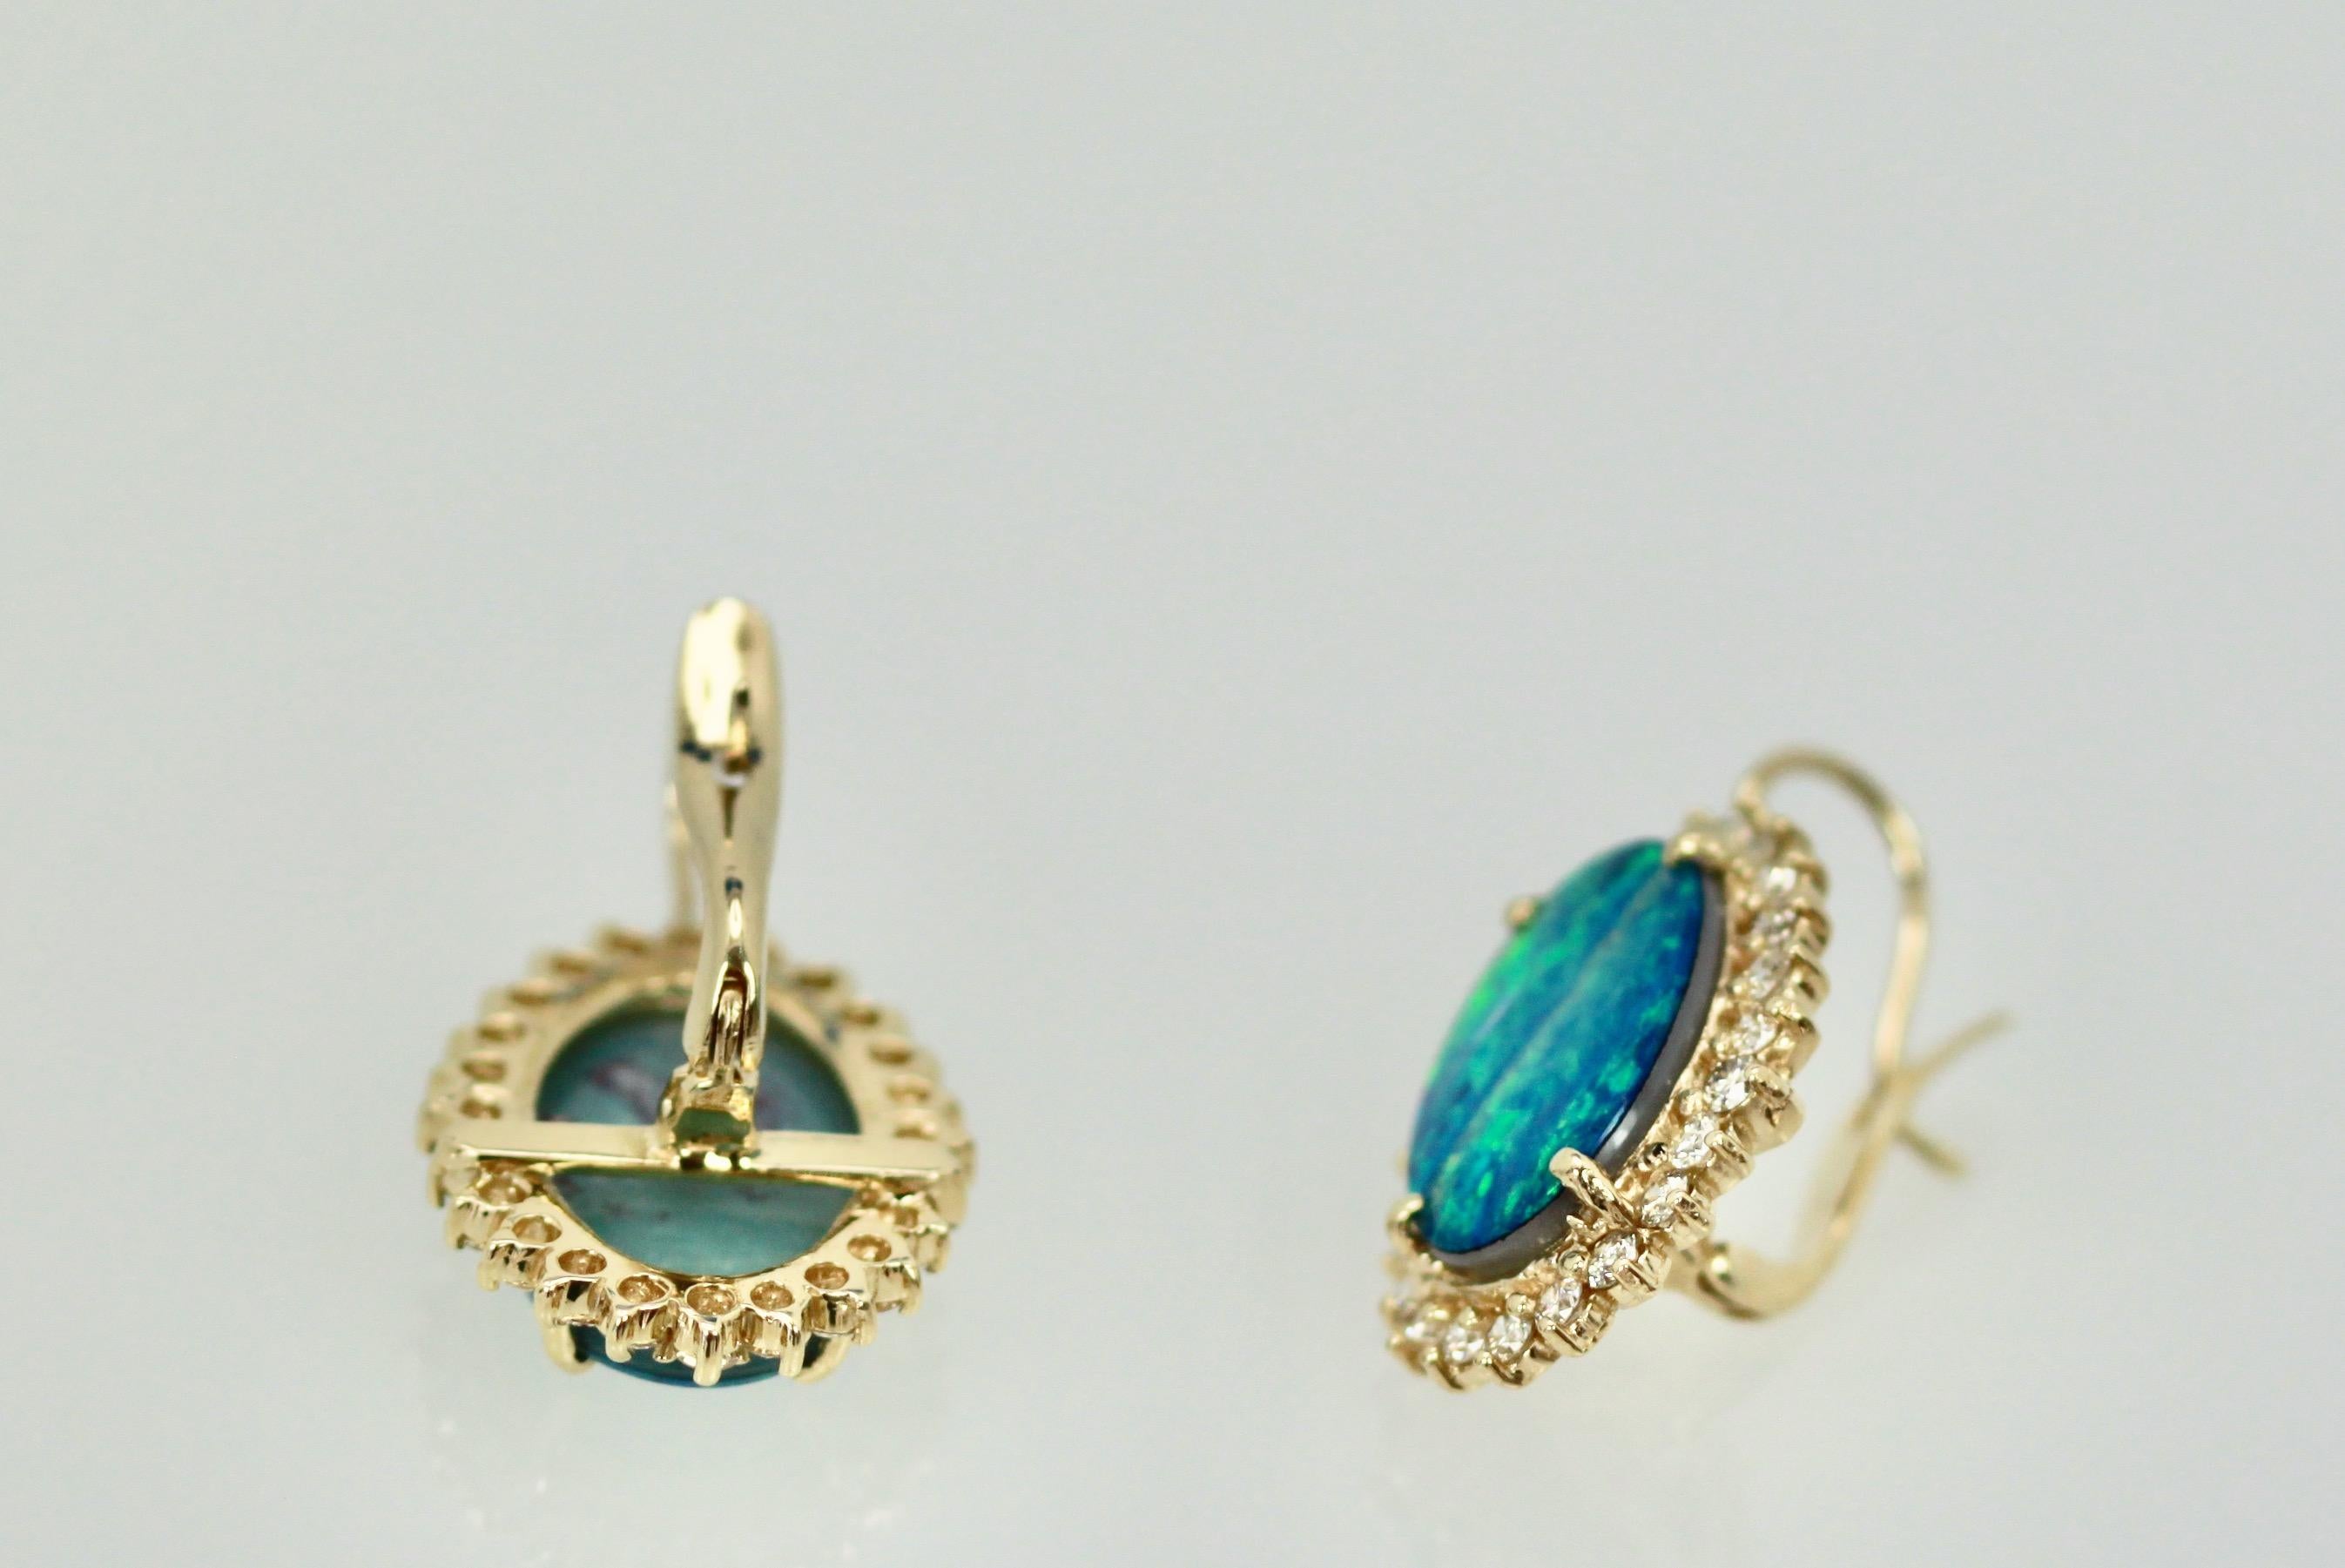 Oval Cut Black Opal Diamond Earrings 14 Karat Yellow Gold